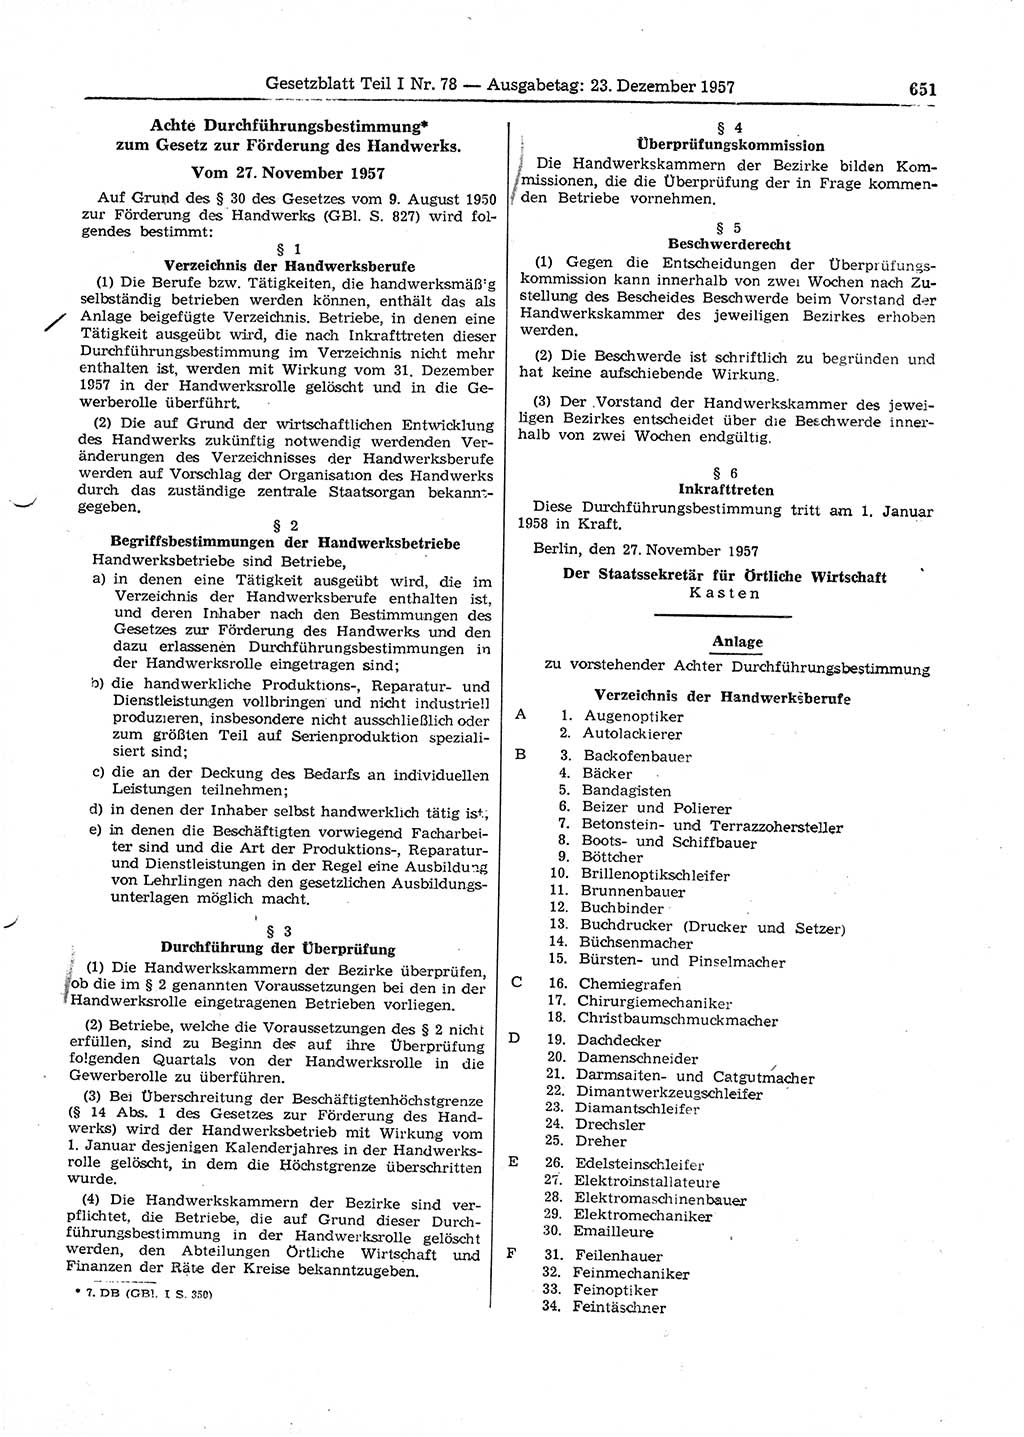 Gesetzblatt (GBl.) der Deutschen Demokratischen Republik (DDR) Teil Ⅰ 1957, Seite 651 (GBl. DDR Ⅰ 1957, S. 651)